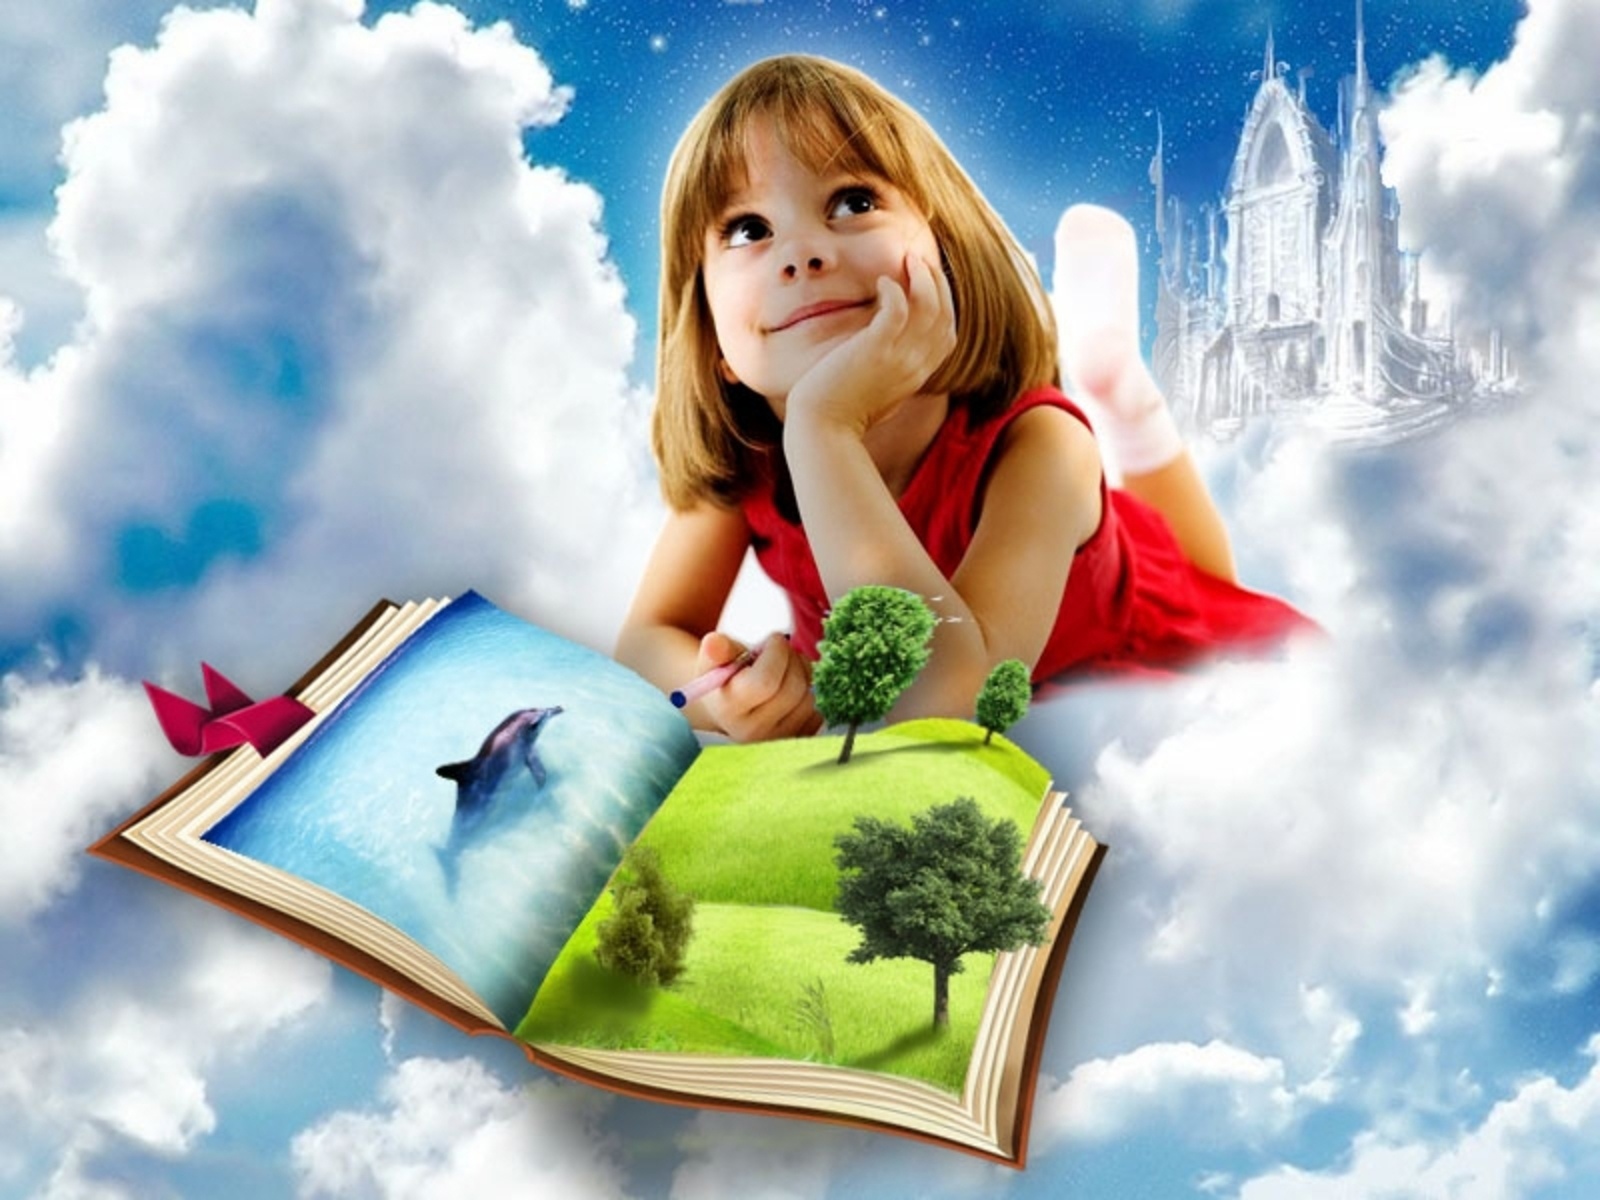 Читаю я и весь край. Детские книги. Детям о мечте. Фон детские книги. Волшебство для детей.